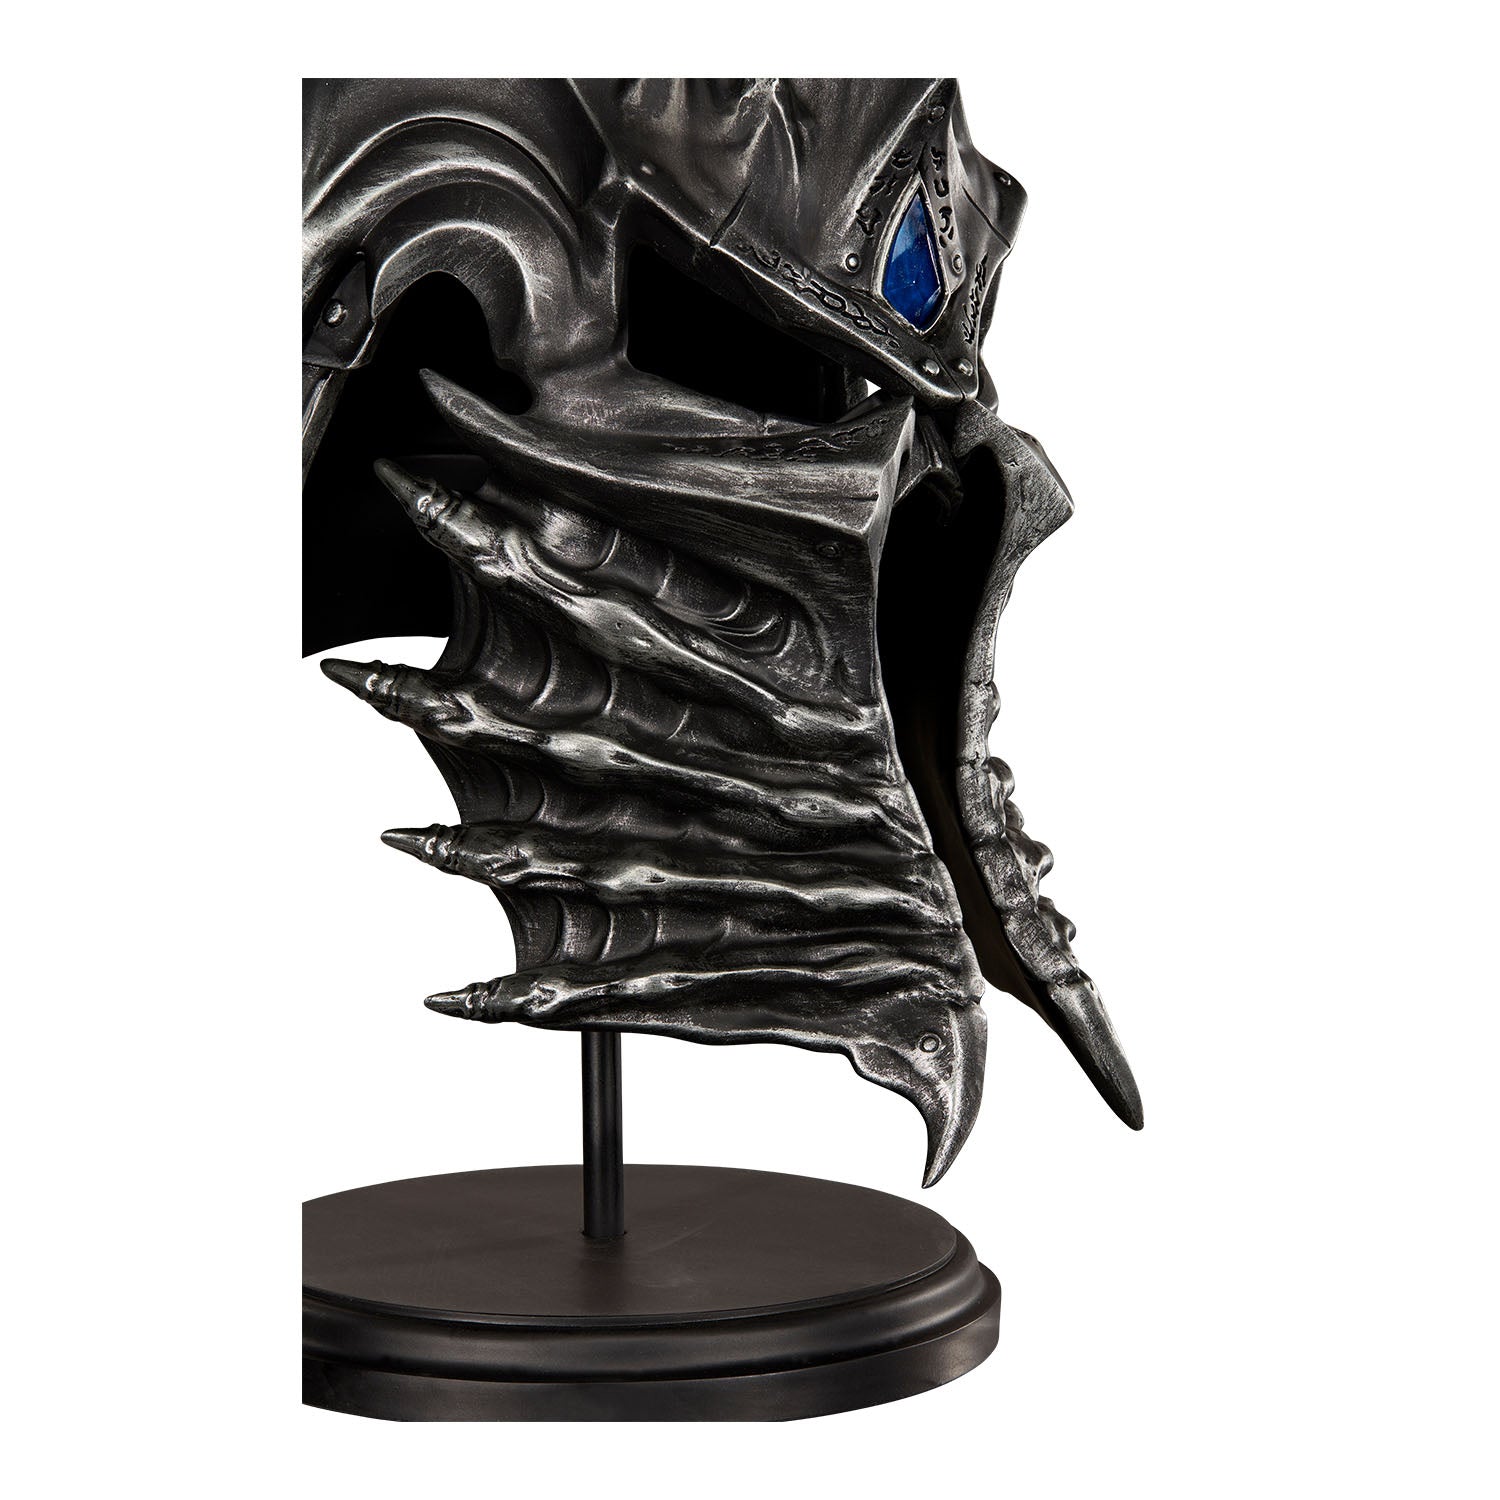 Overwatch Tracer 27cm Premium Statue